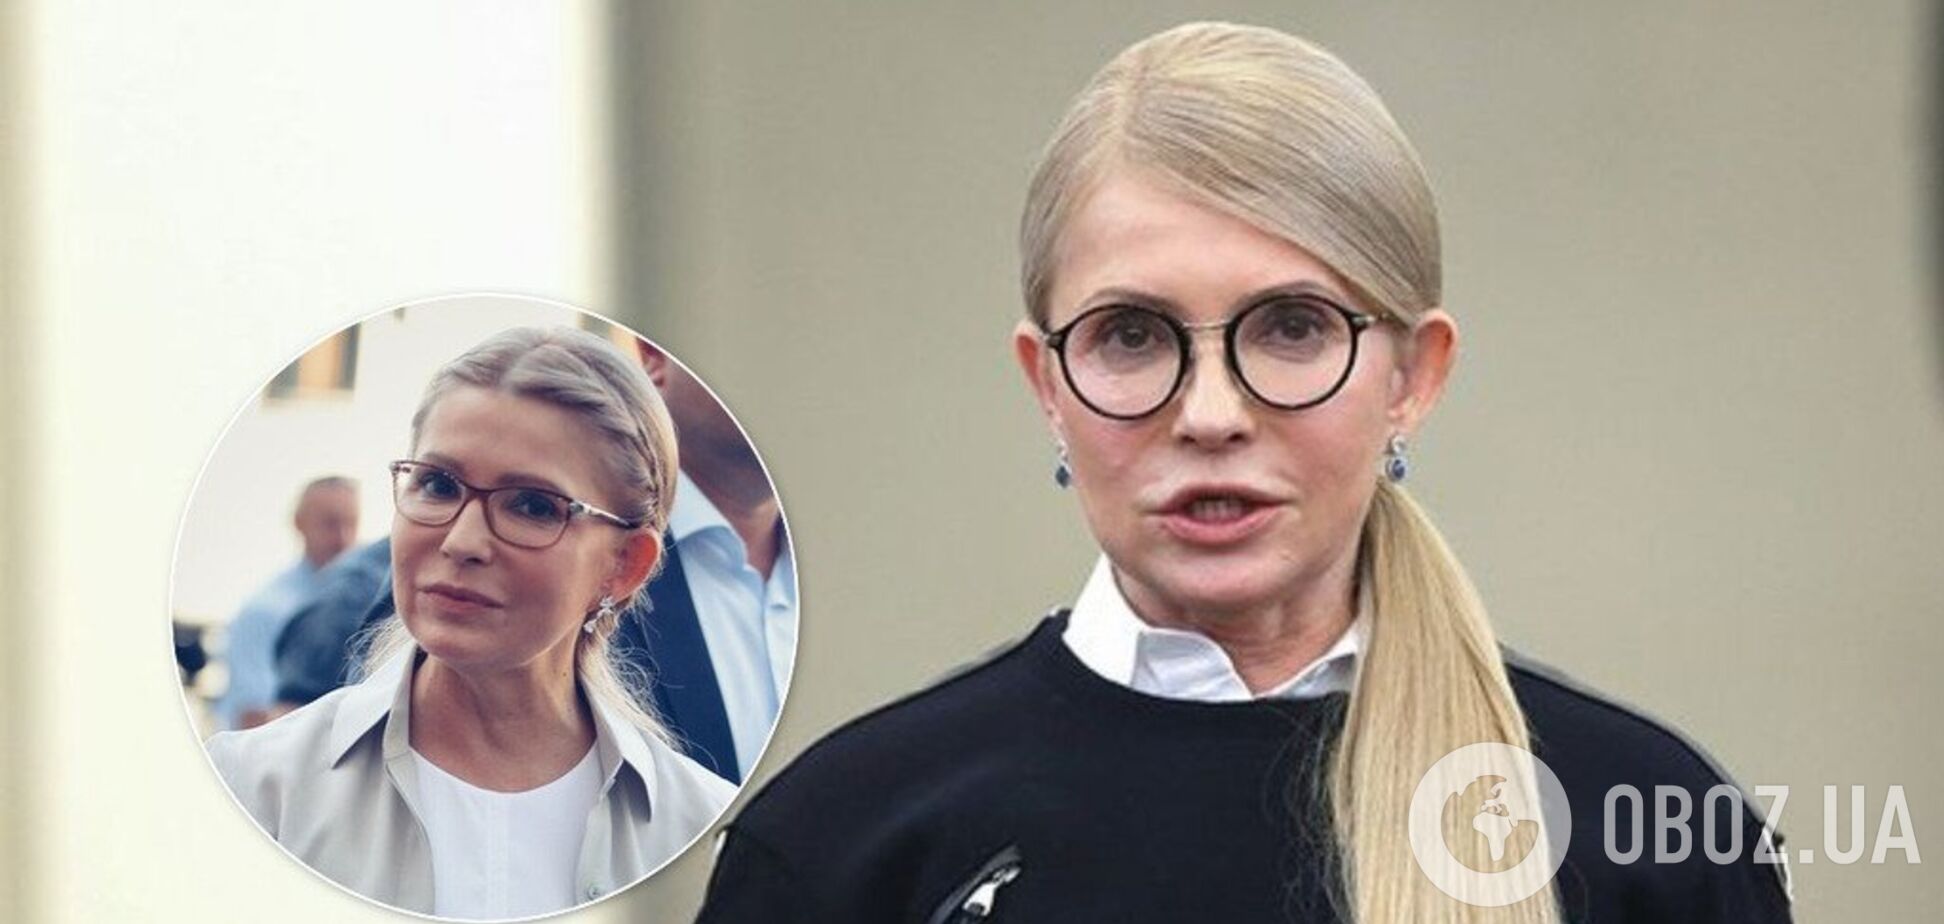 Тимошенко прийшла в Раду з новою зачіскою: фото до і після